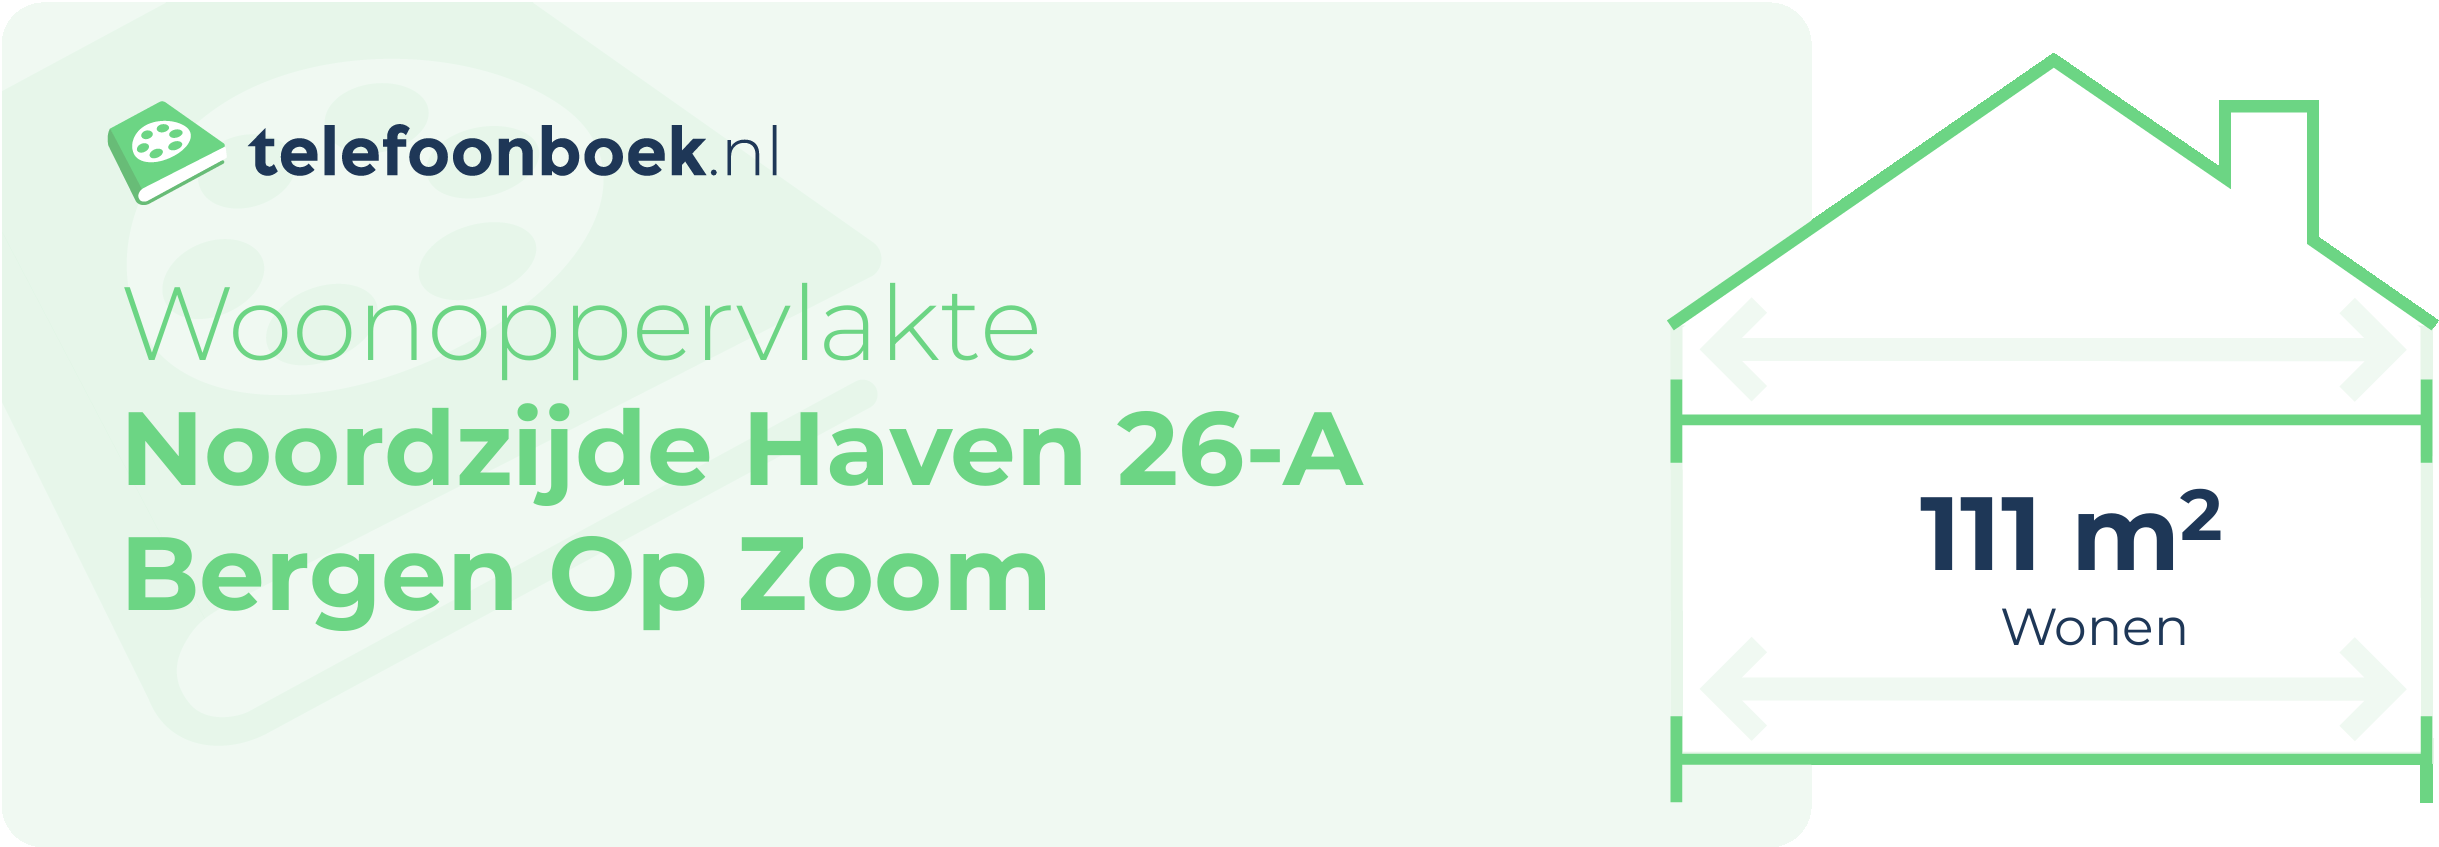 Woonoppervlakte Noordzijde Haven 26-A Bergen Op Zoom